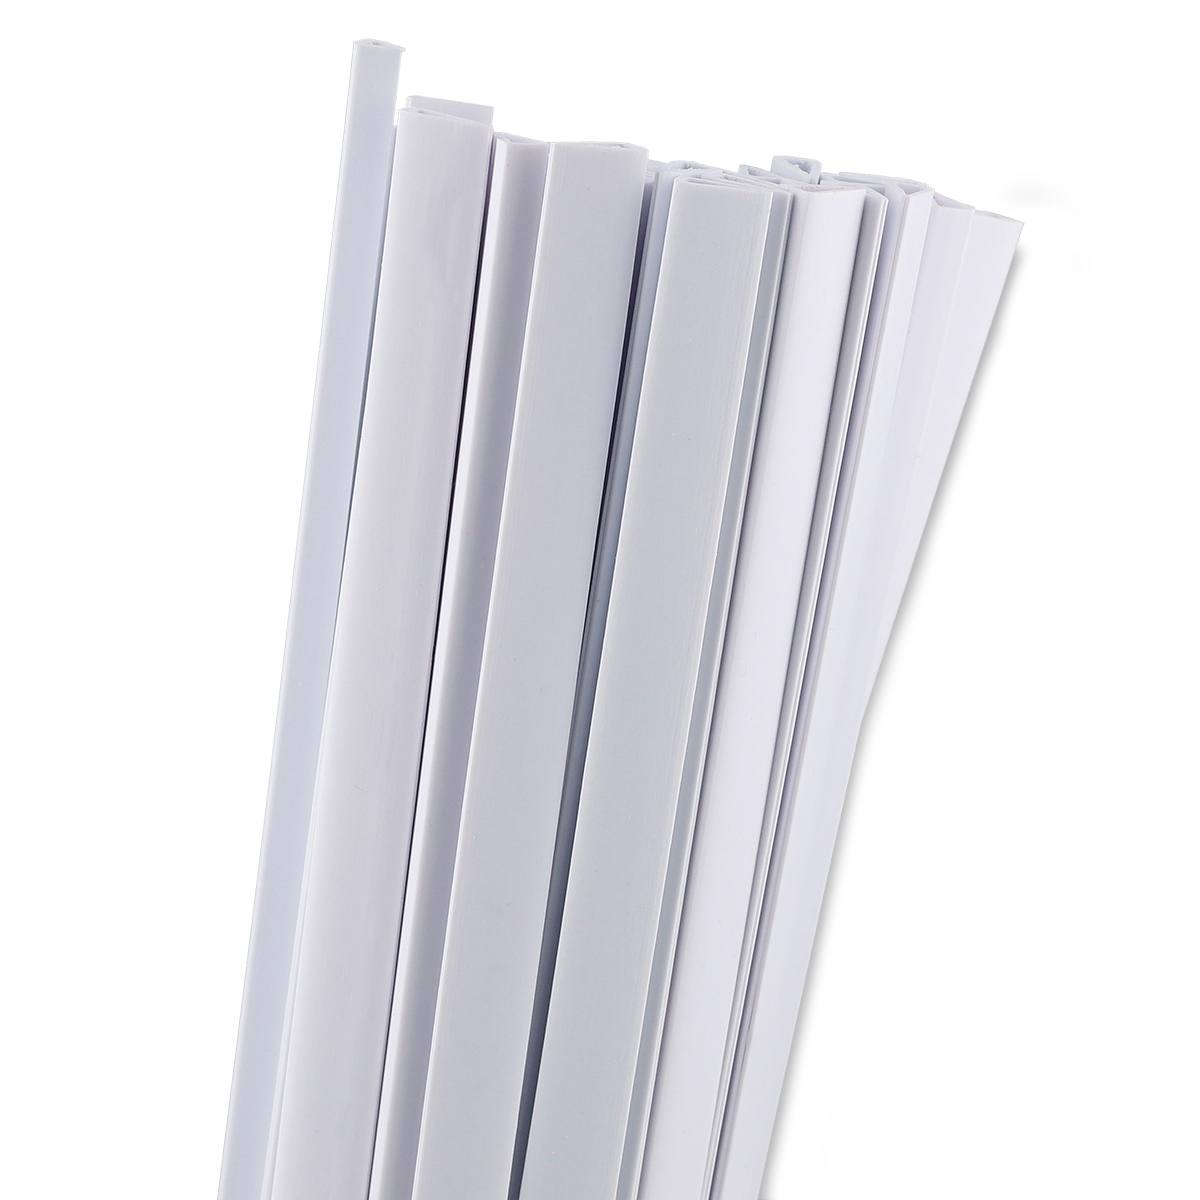 Folders Carta de Plástico con Costilla Office Depot Transparente 50 piezas  | Office Depot Mexico